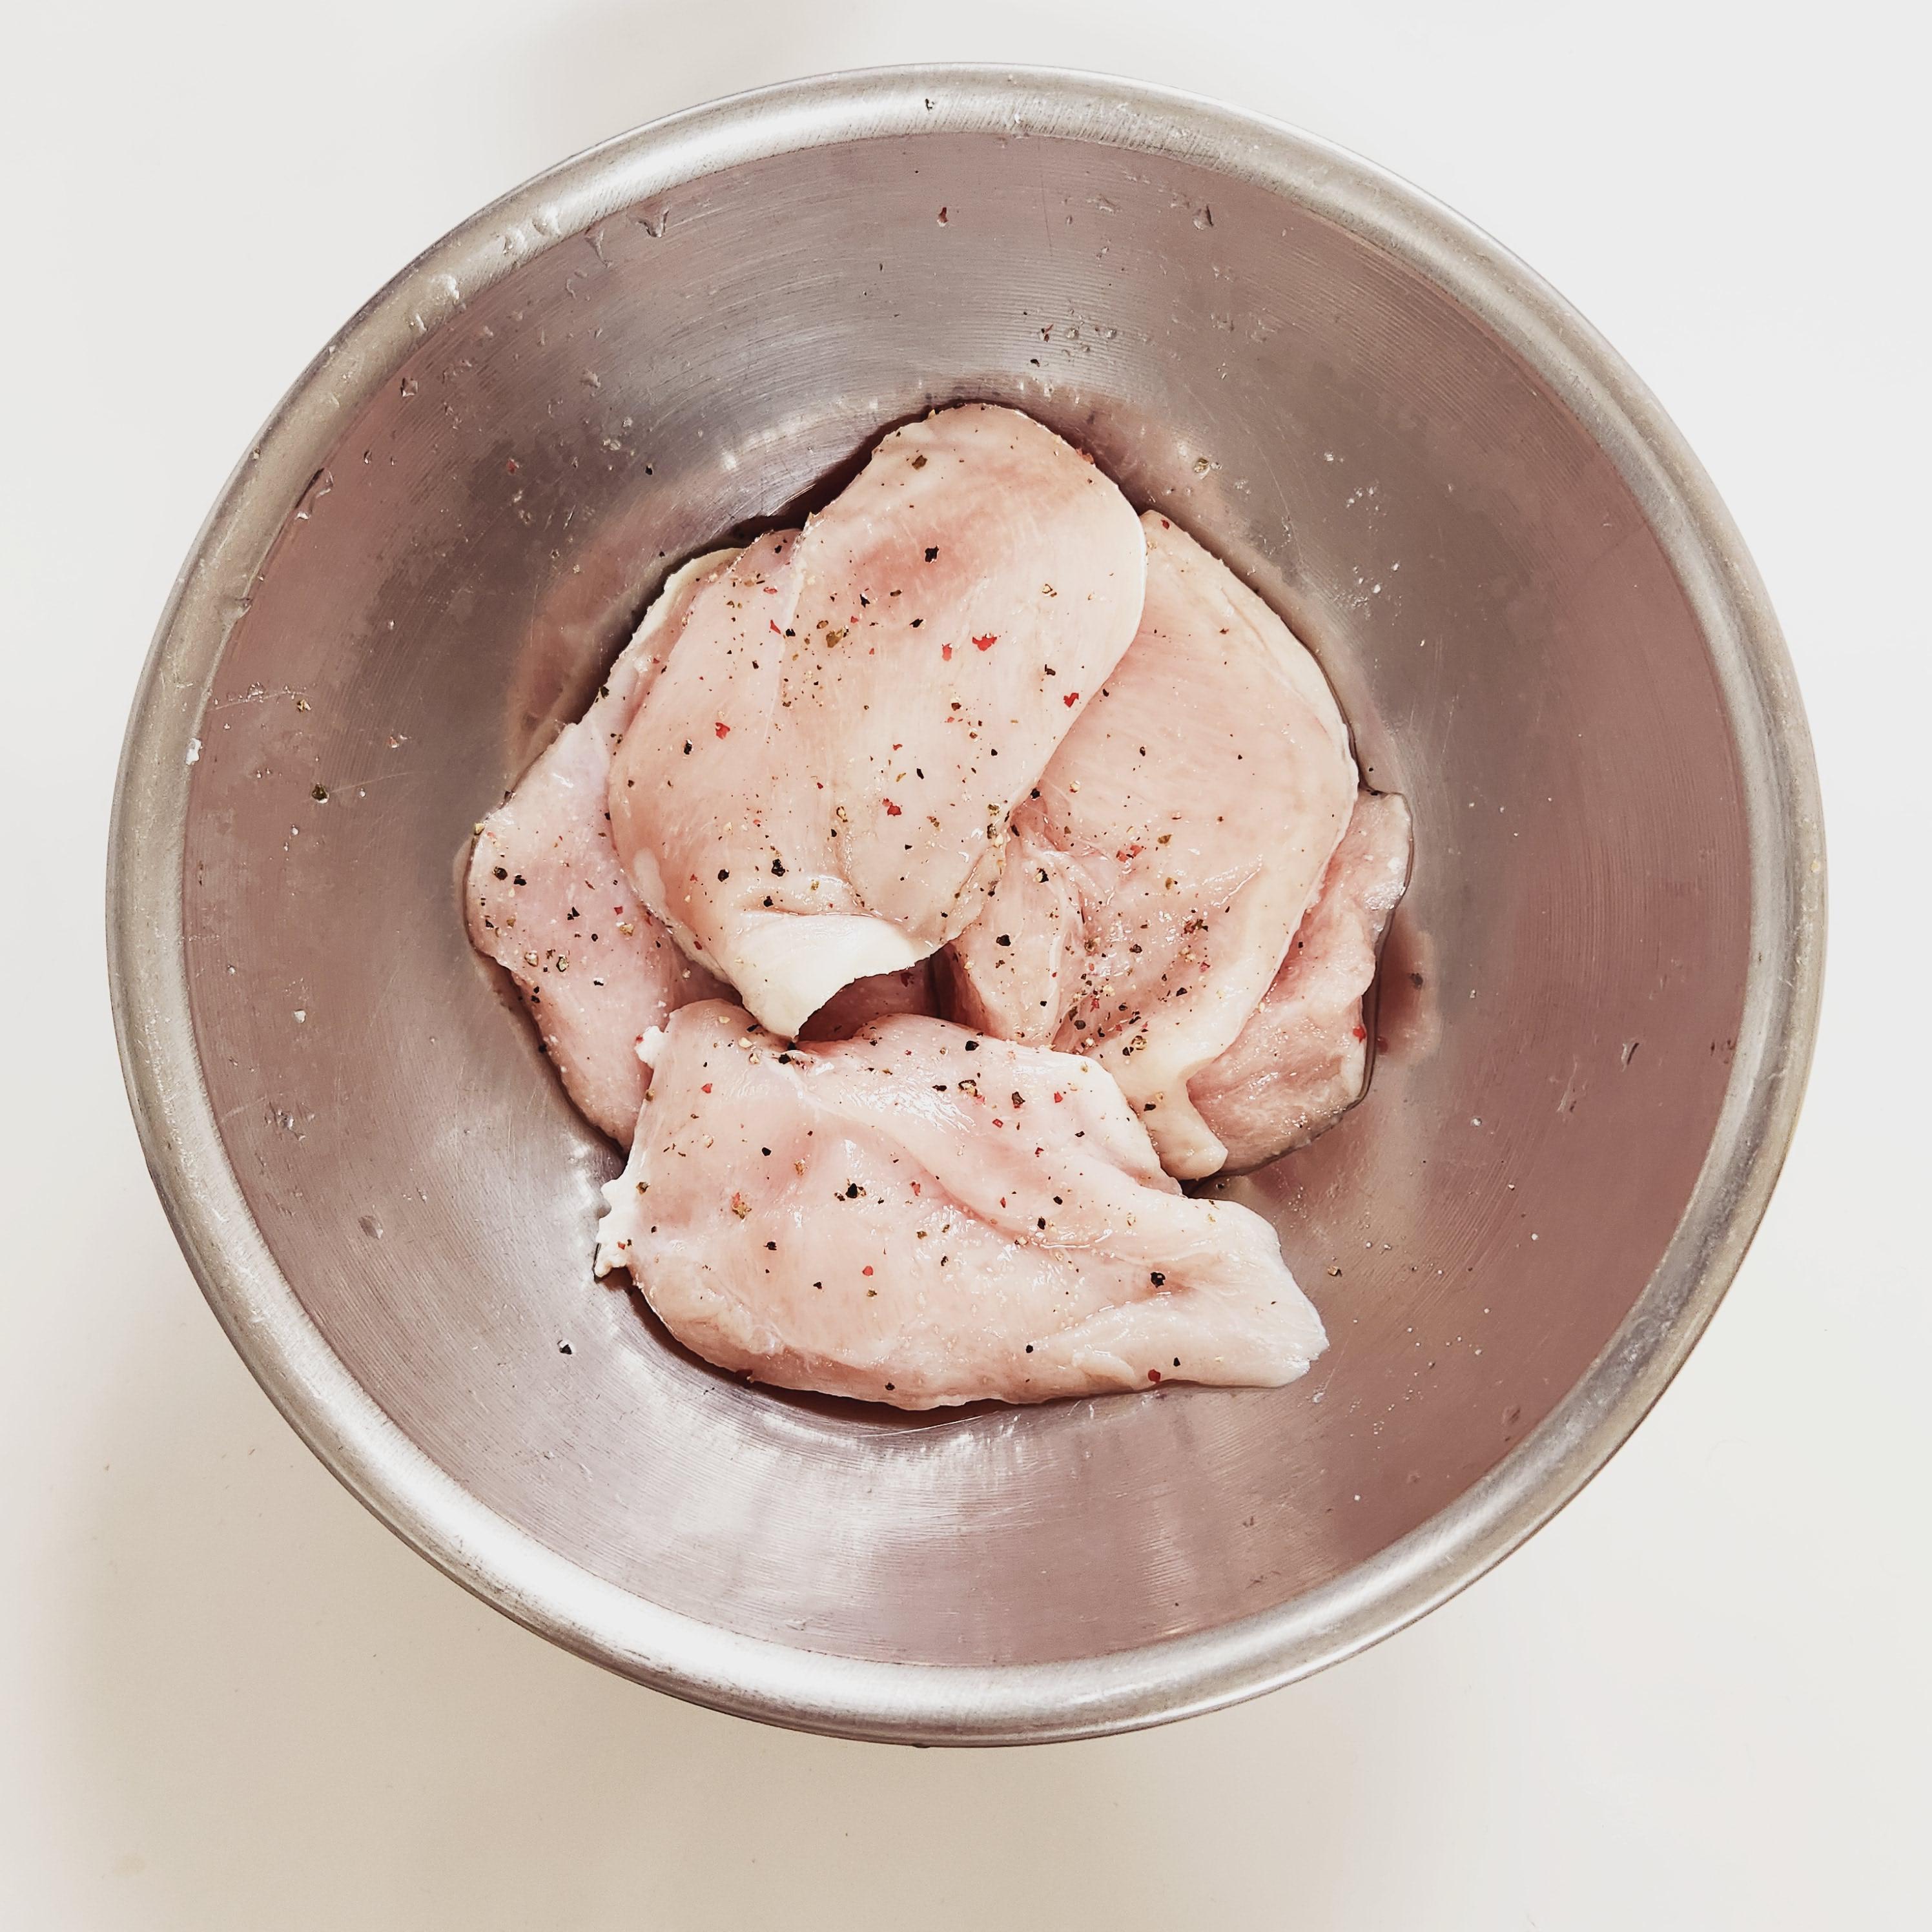 1. 닭가슴살에 미림(청주)&#44; 소금 약간&#44; 통후추를 갈아(없으면 일반 후추) 10분 정도 재우기